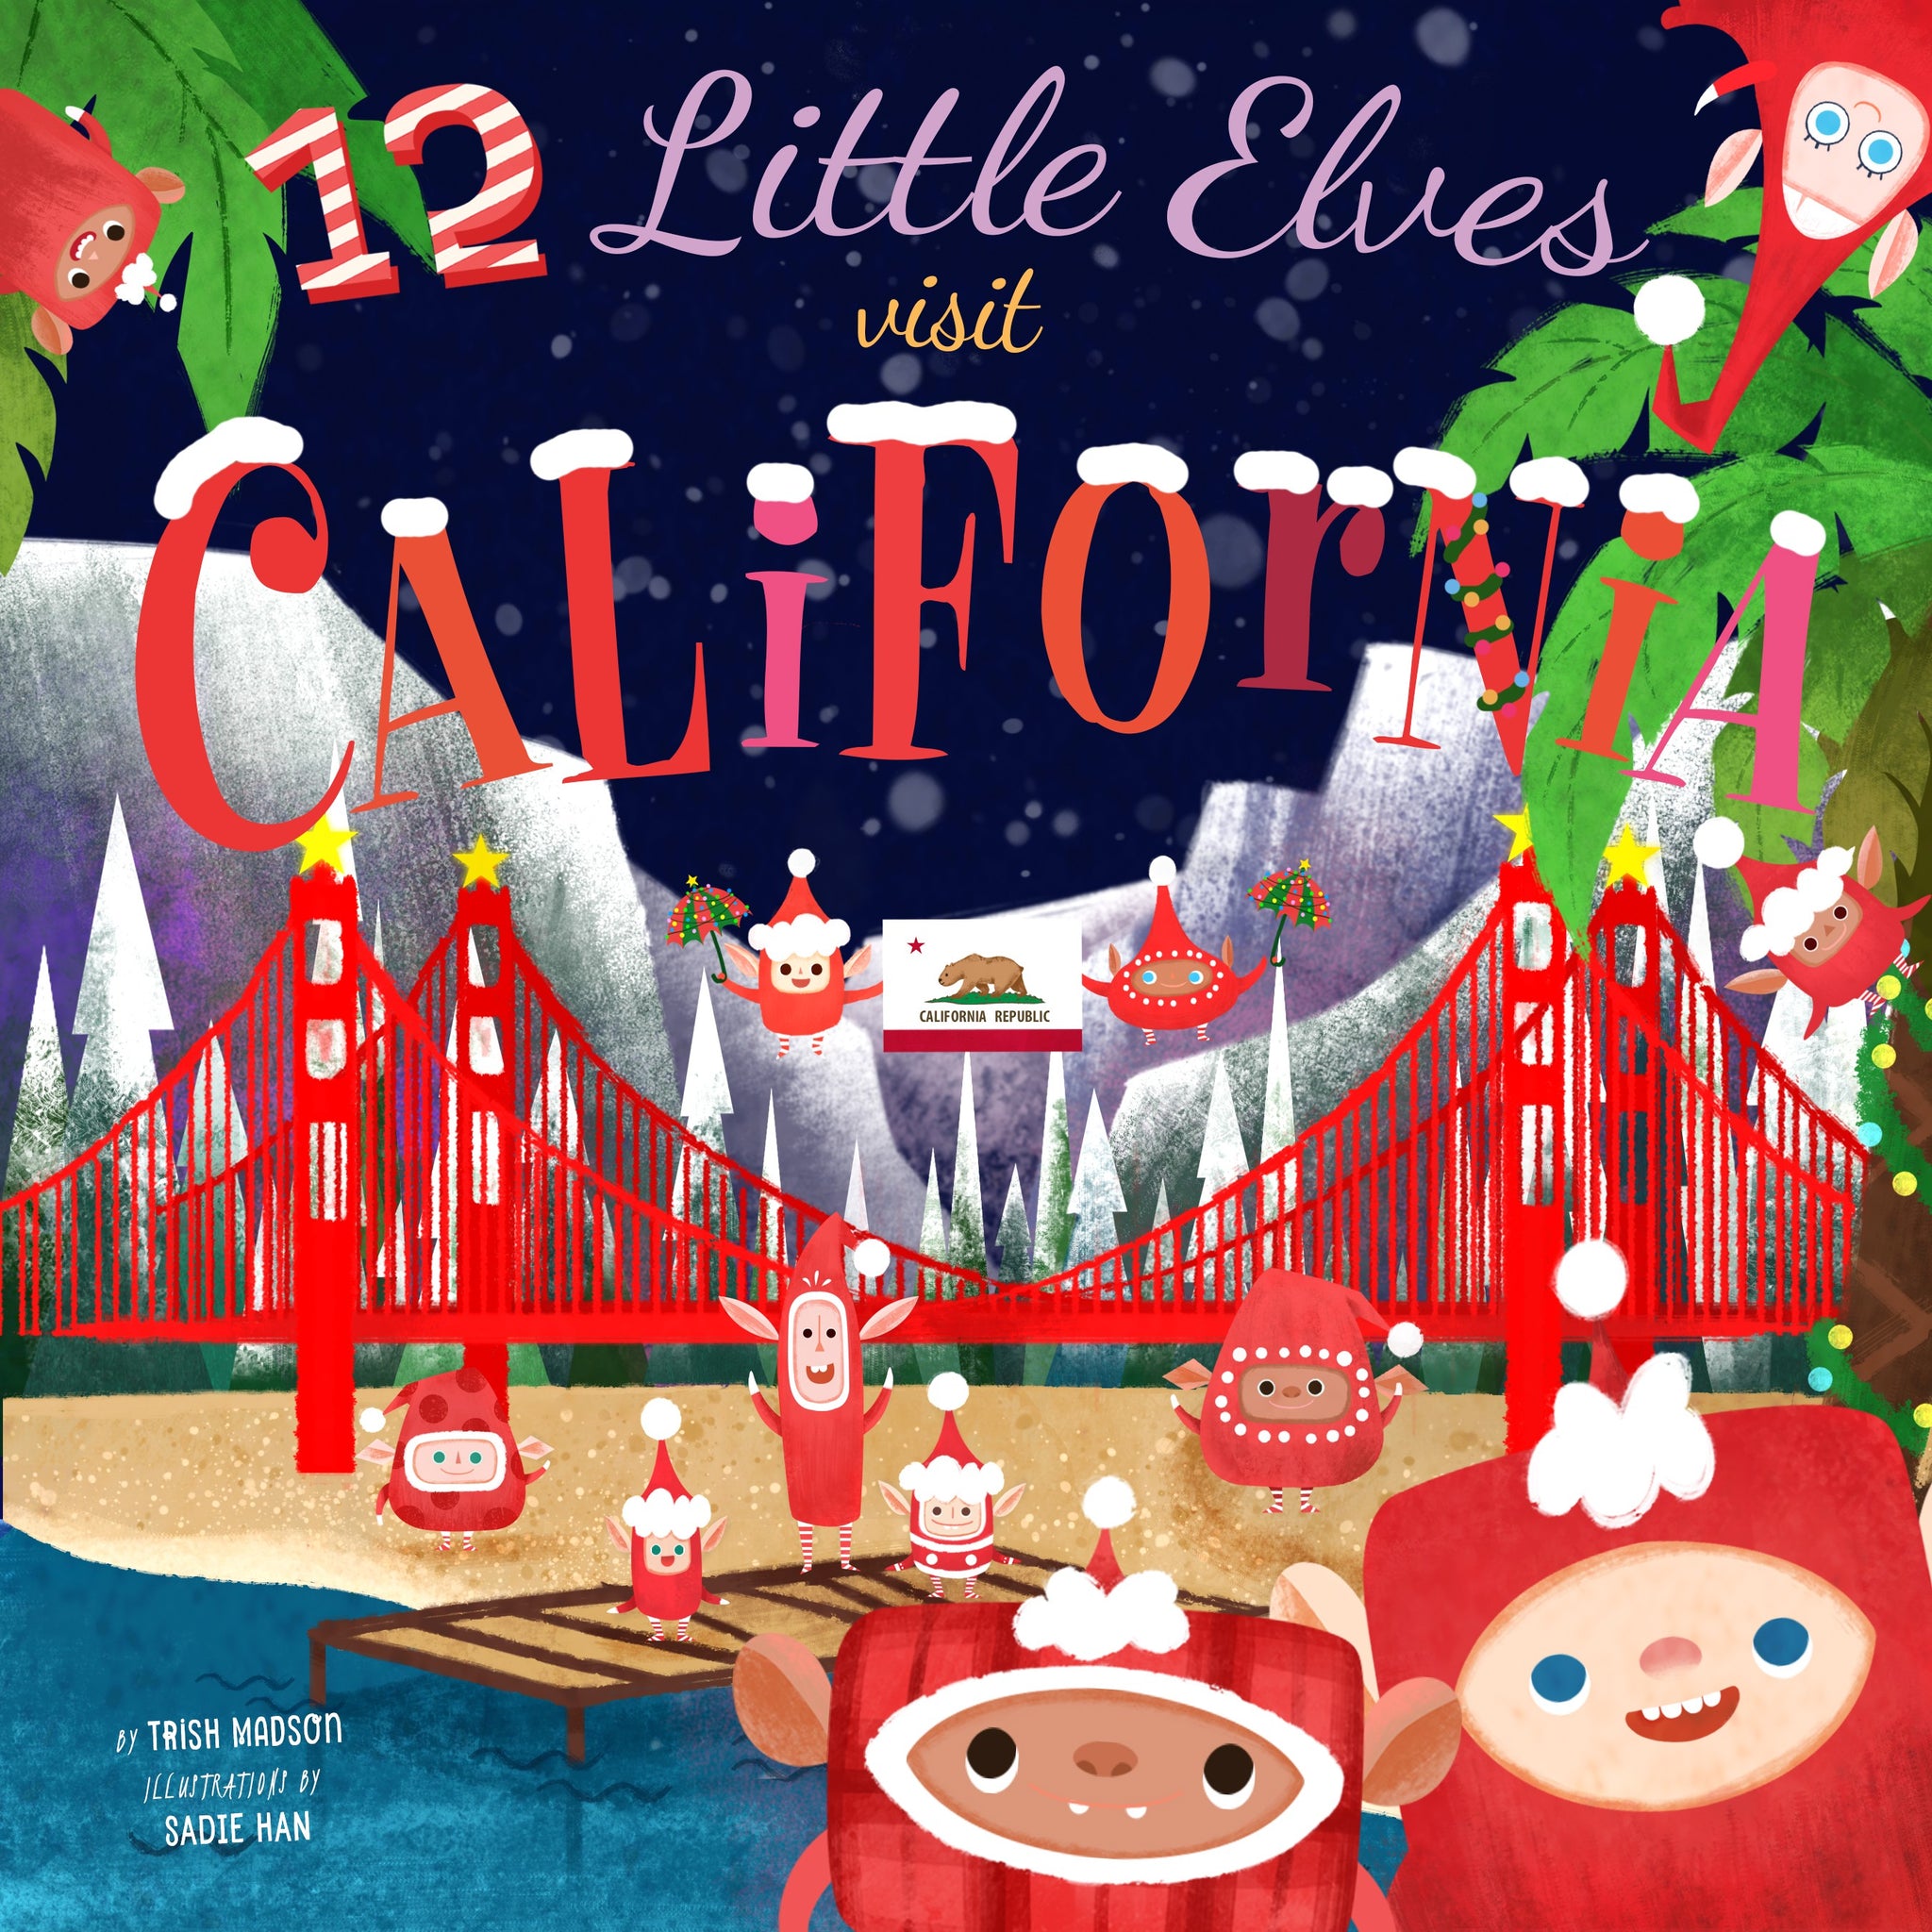 12 Little Elves Visit California - HoneyBug 